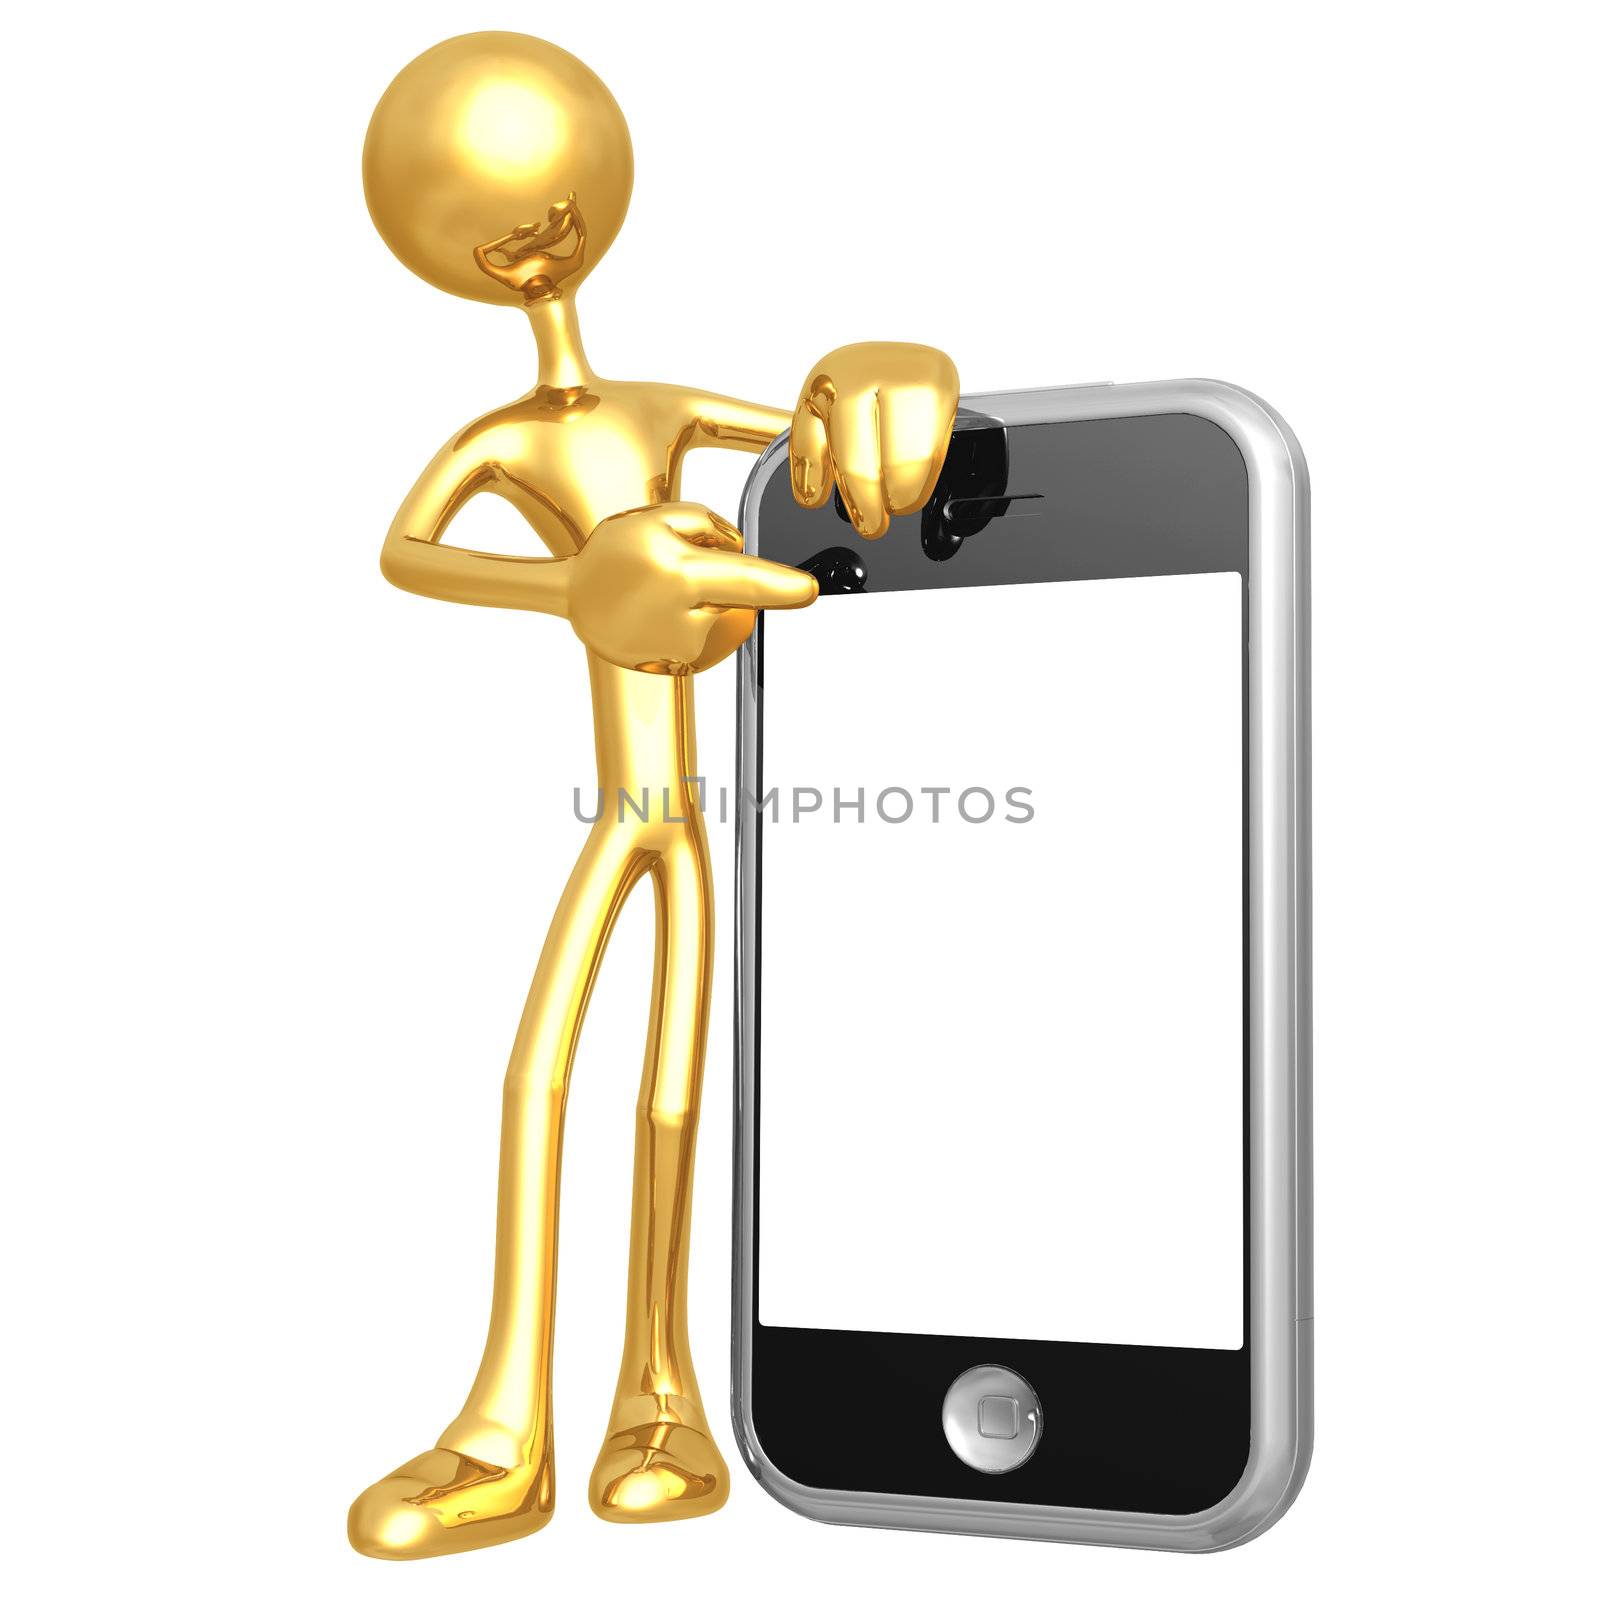 Touch Screen Cellphone Presenter by LuMaxArt